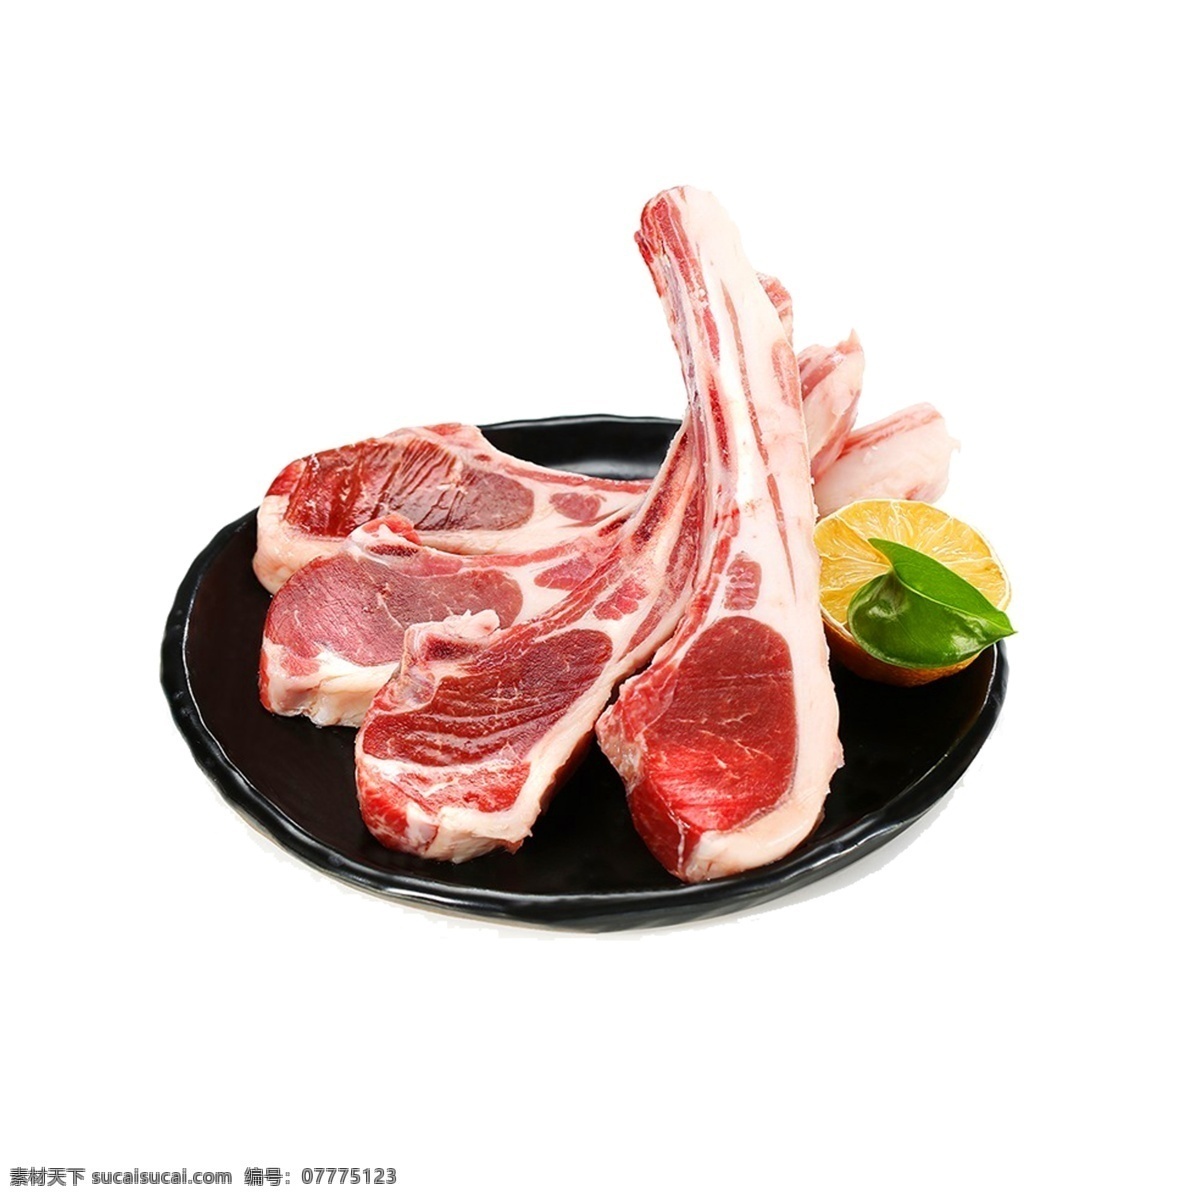 火锅食材 羊排 火锅 肉 牛肉 羊肉 一盘肉 五花肉 食材 肉类 食品类 食品 素材图